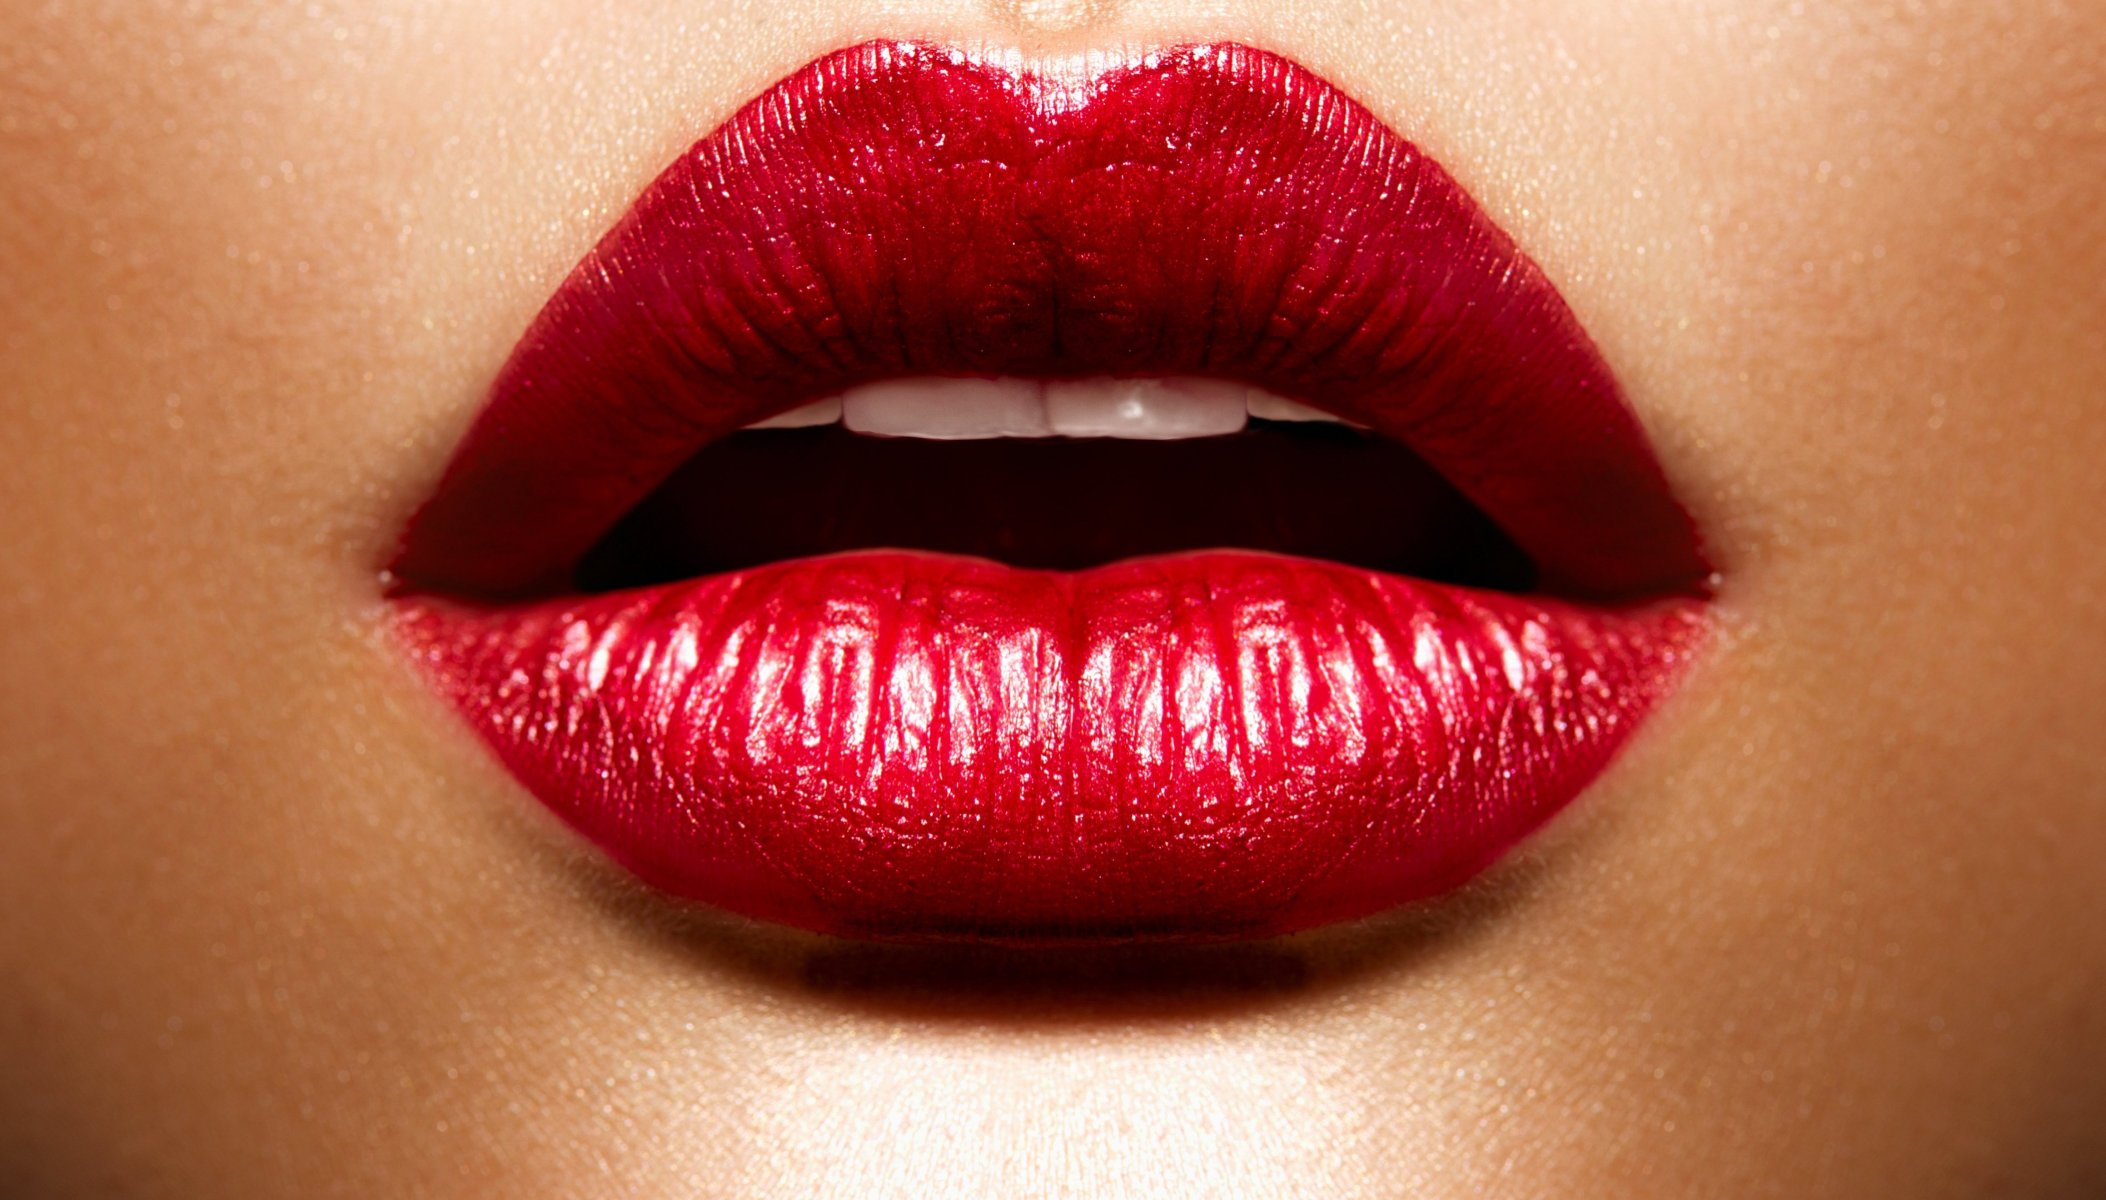 Red lips - картинки в разделе Девушки.